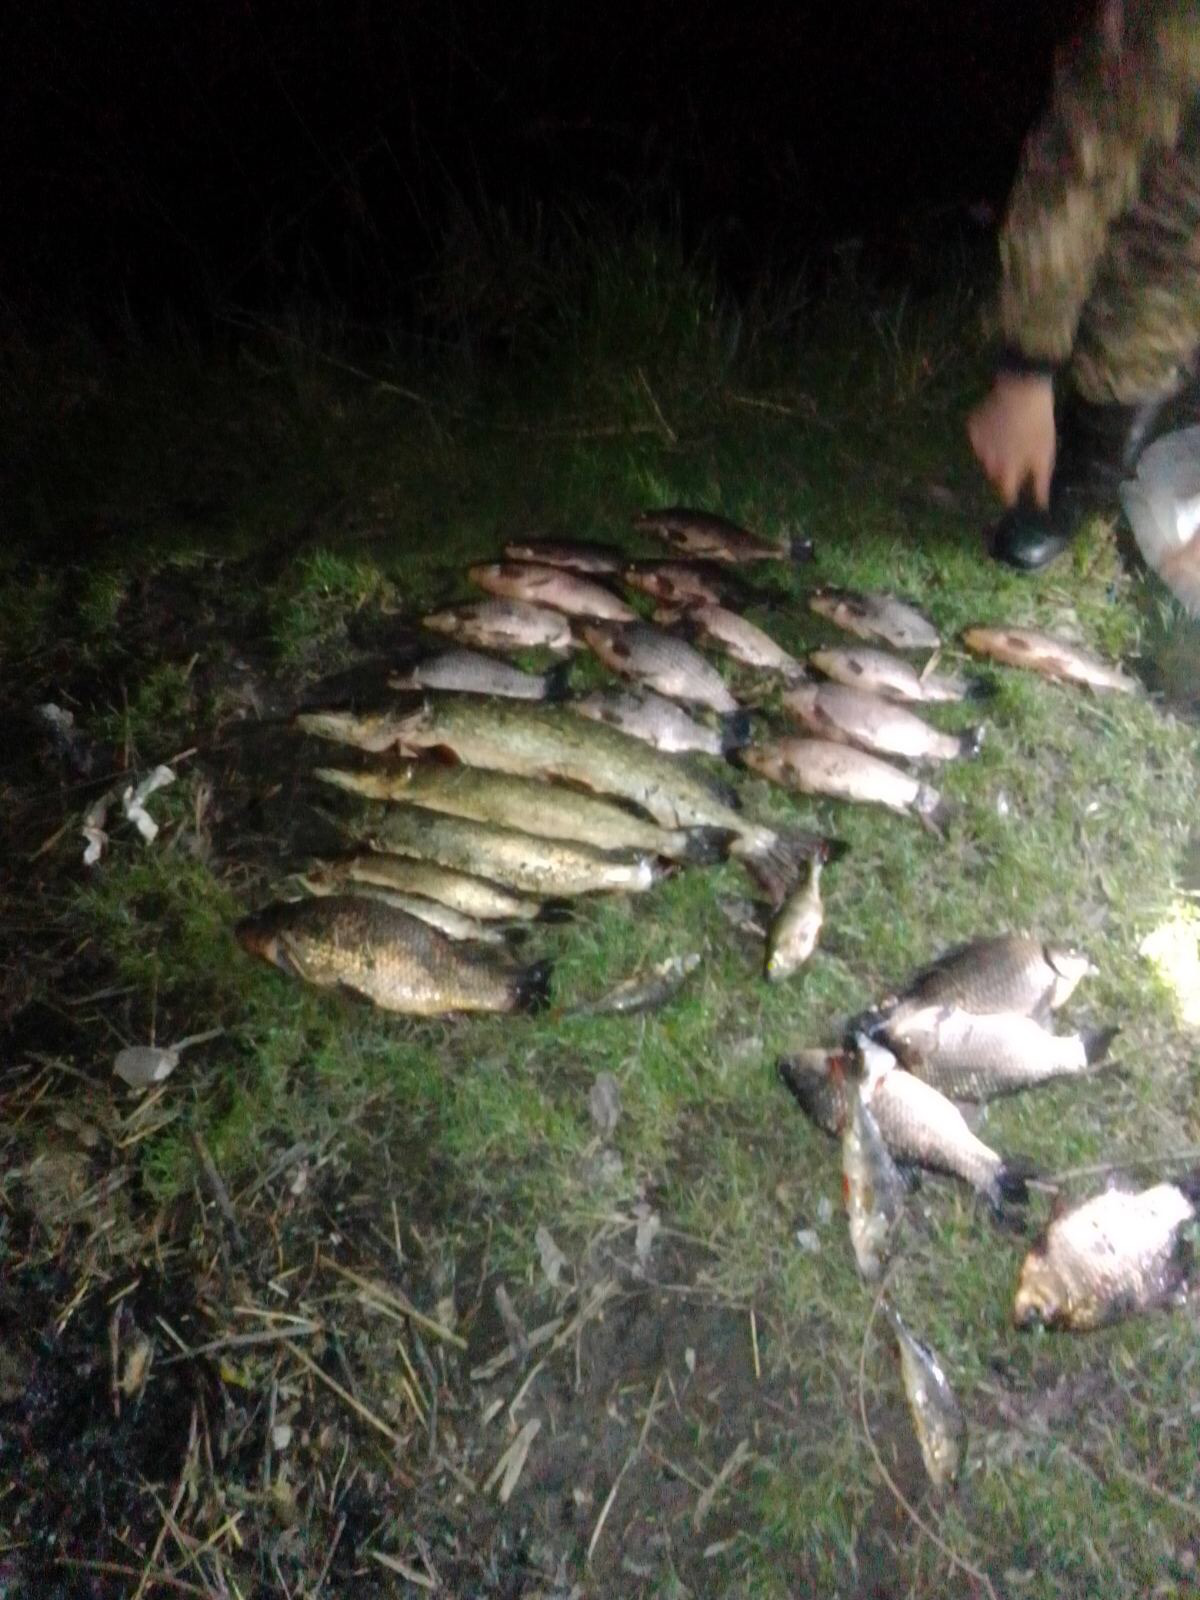 В орнітологічному заказнику в Чарукові браконьєри зловили 10 кілограмів риби (фото)